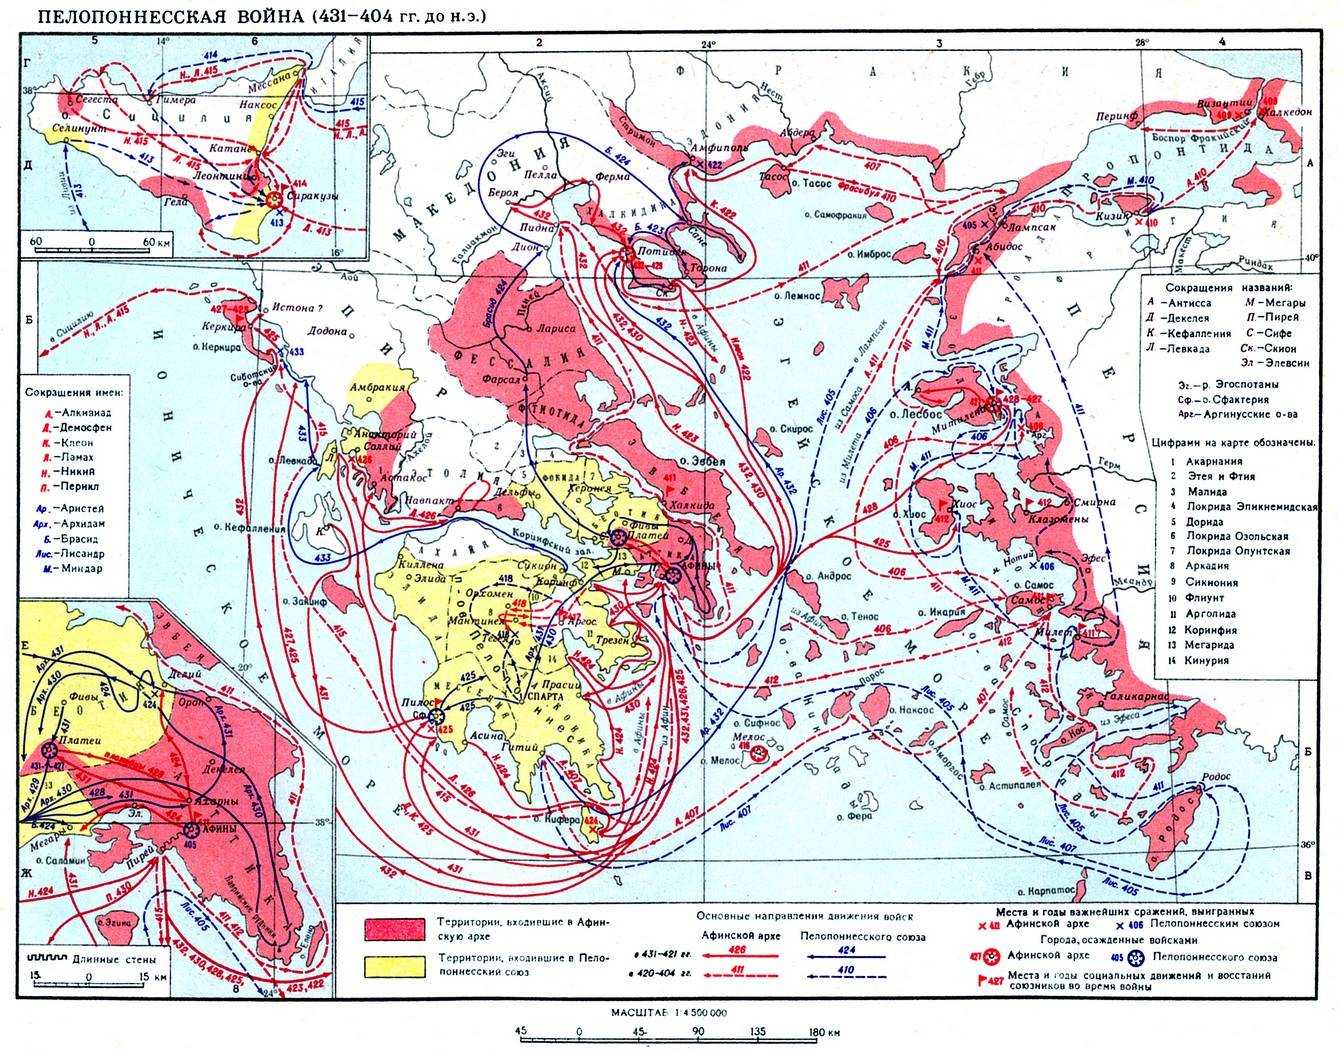 Информация о пелопоннесской войне. Пелопонесские войны карта.